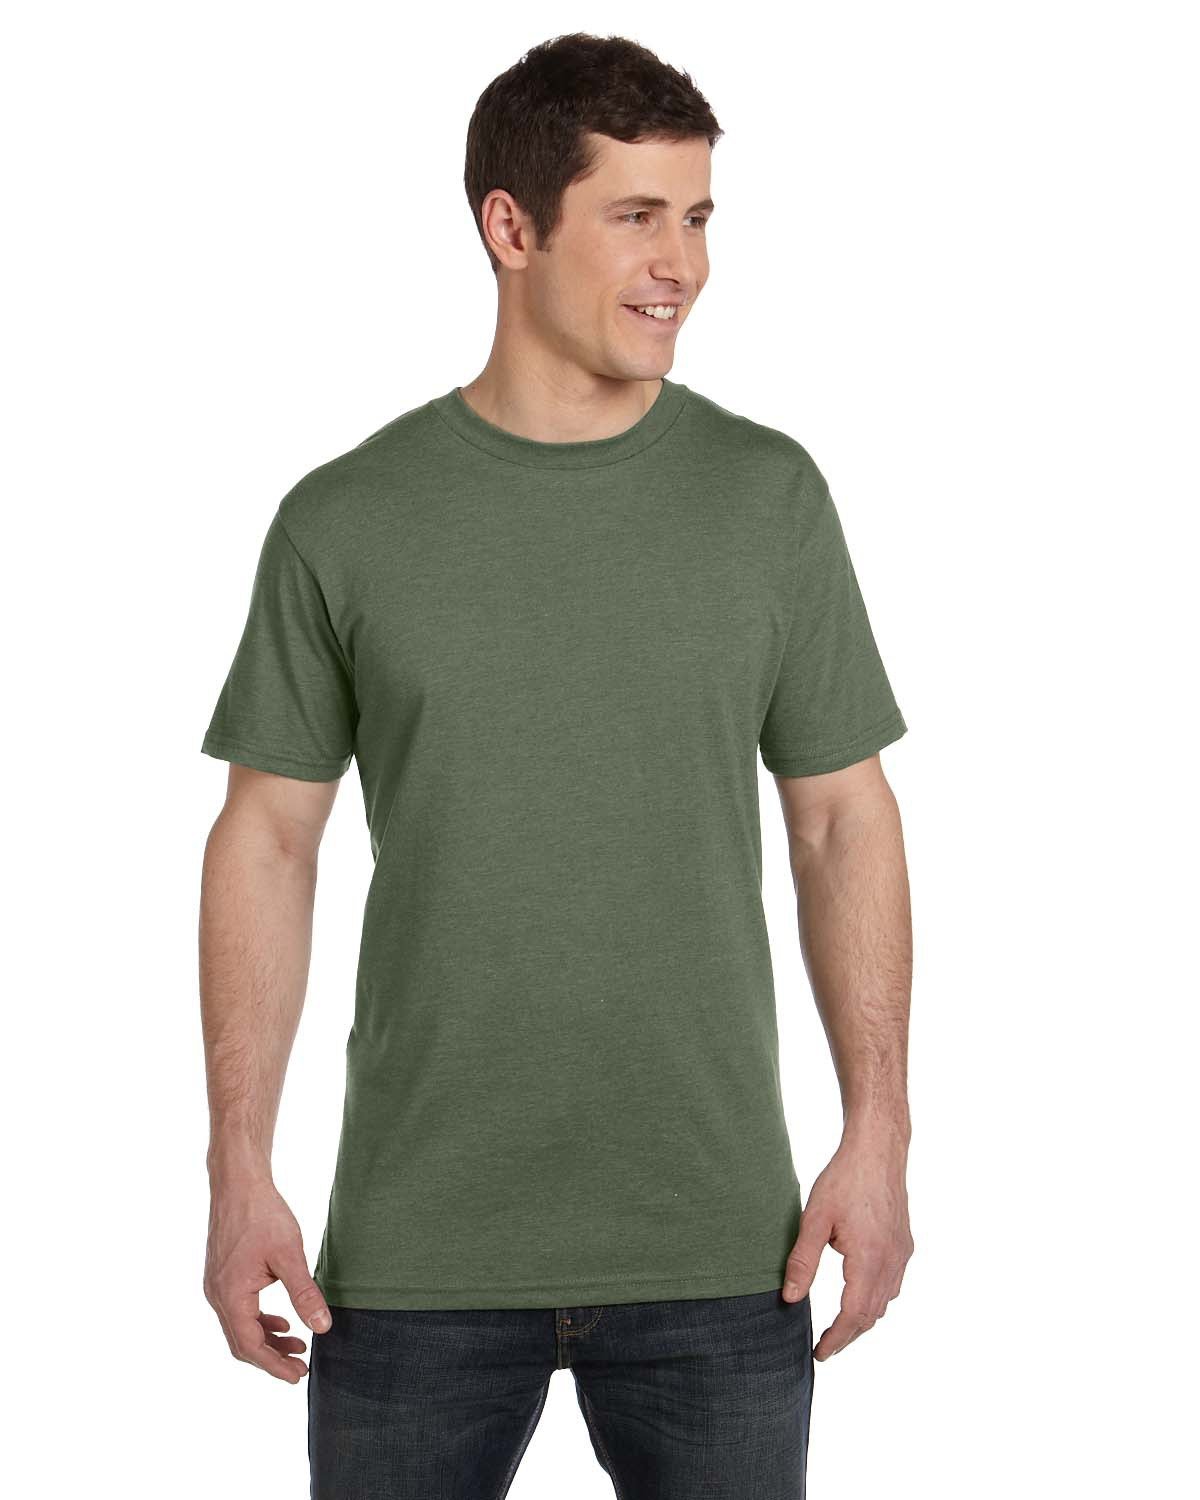 Unisex Eco Blend T-Shirt-econscious